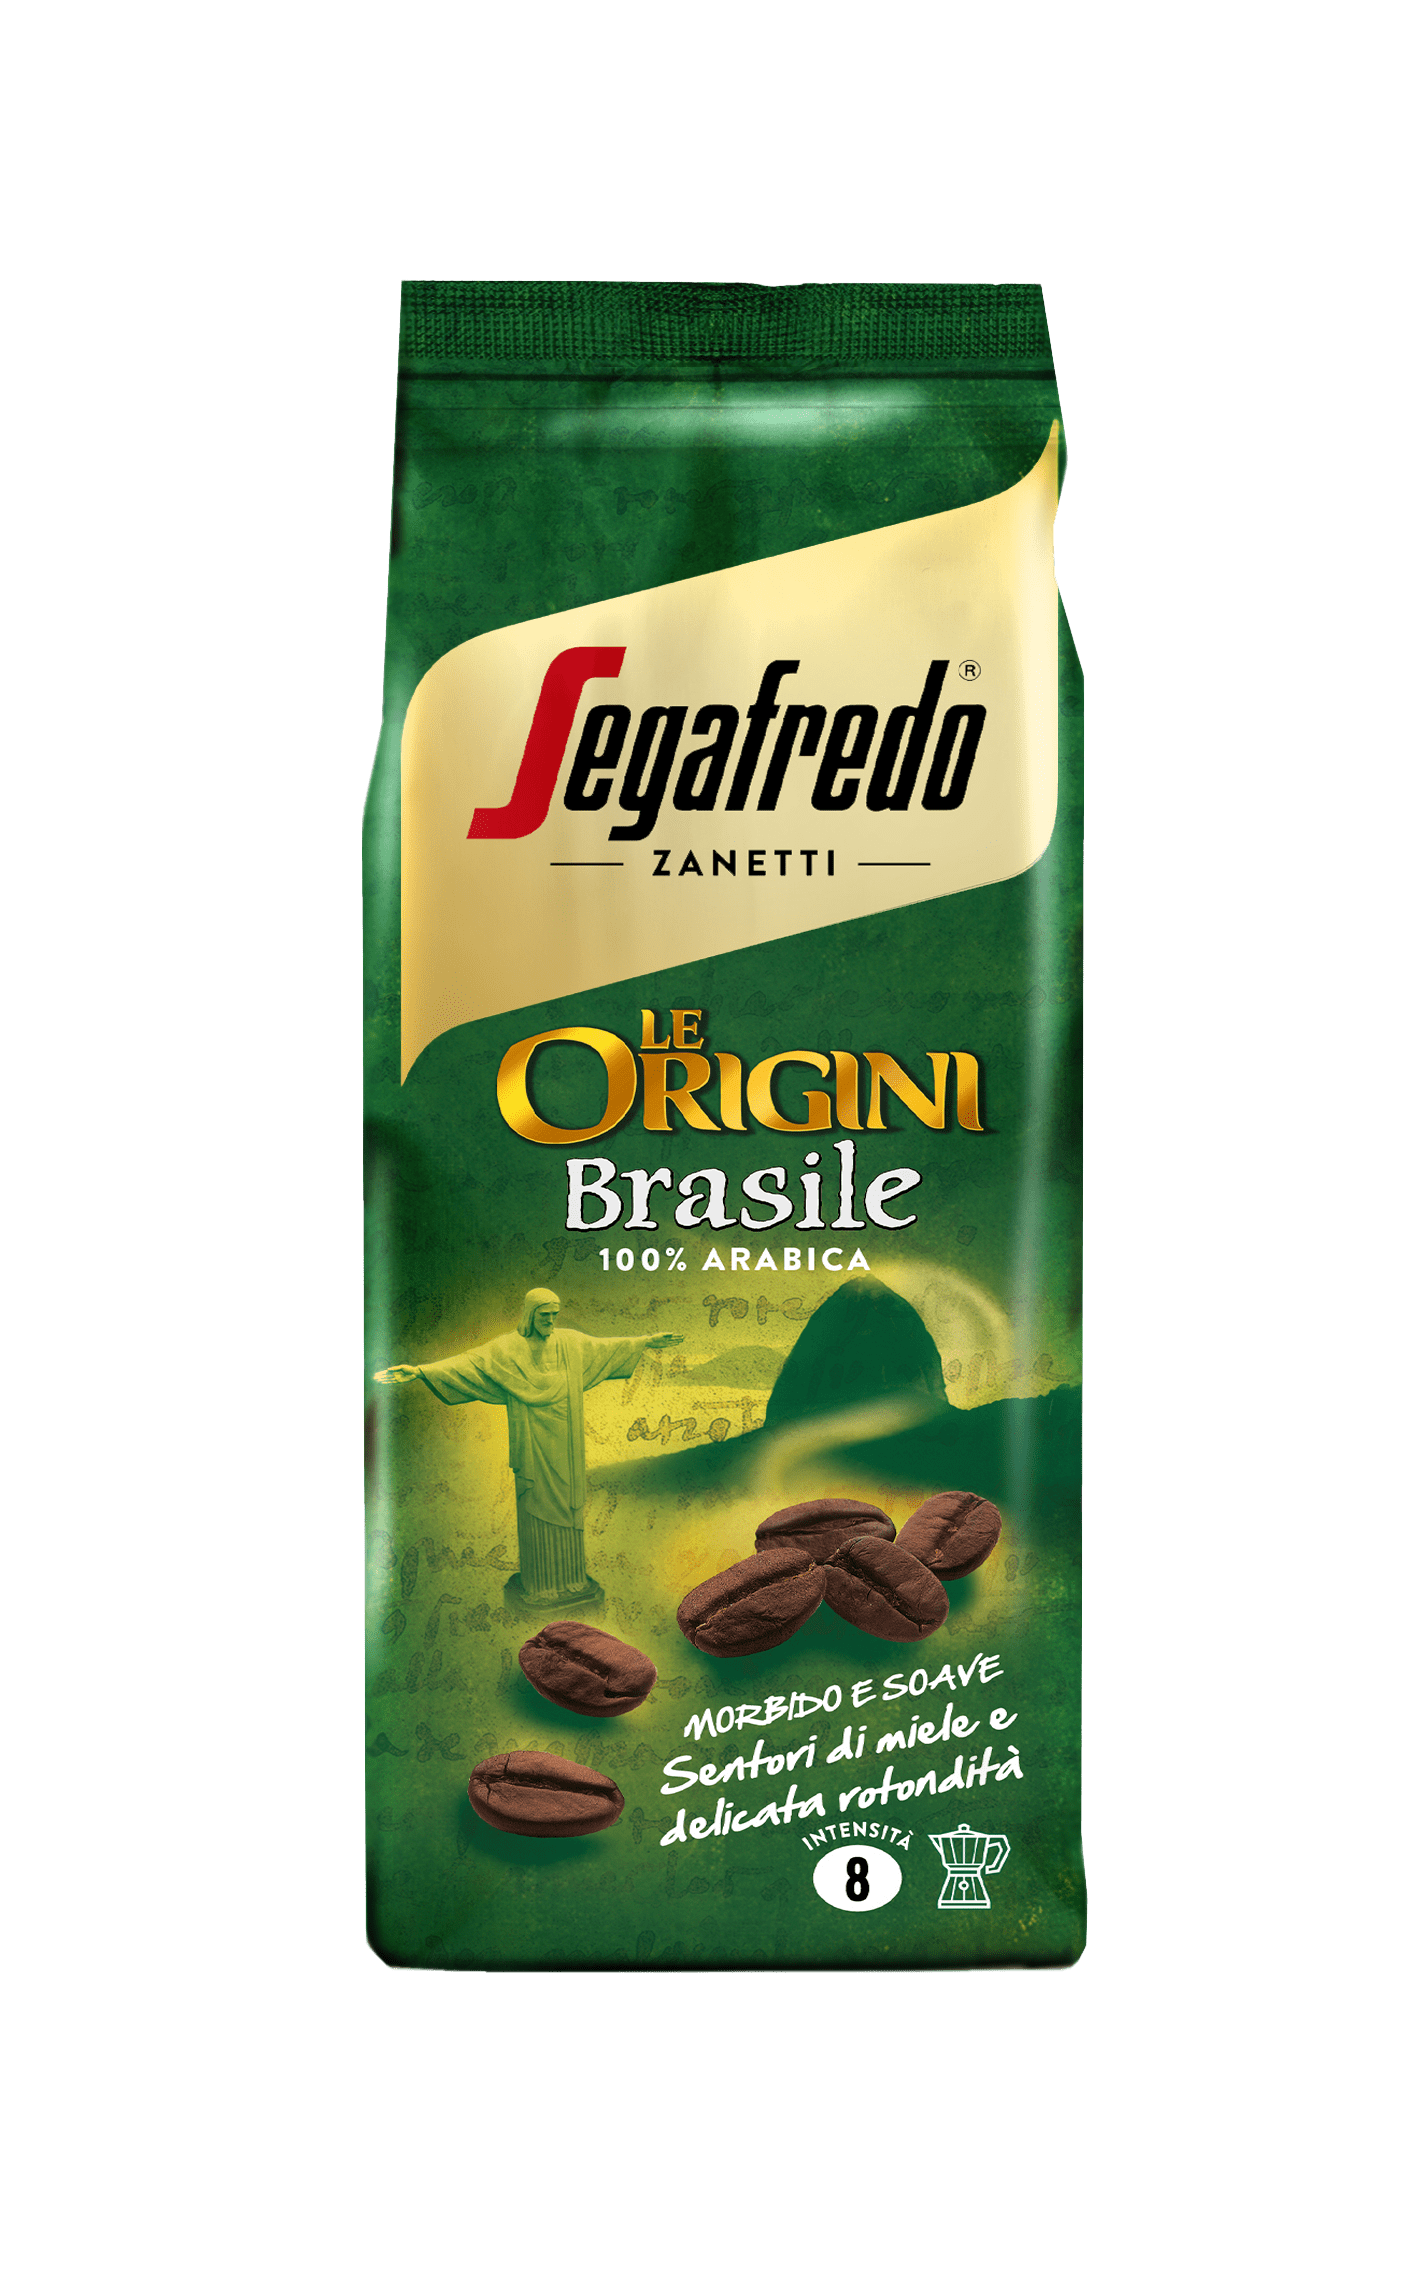 SEGAFREDO ZANETTI - LE ORIGINI: BRASILE GROUND COFFEE (SINGLE ORIGIN)